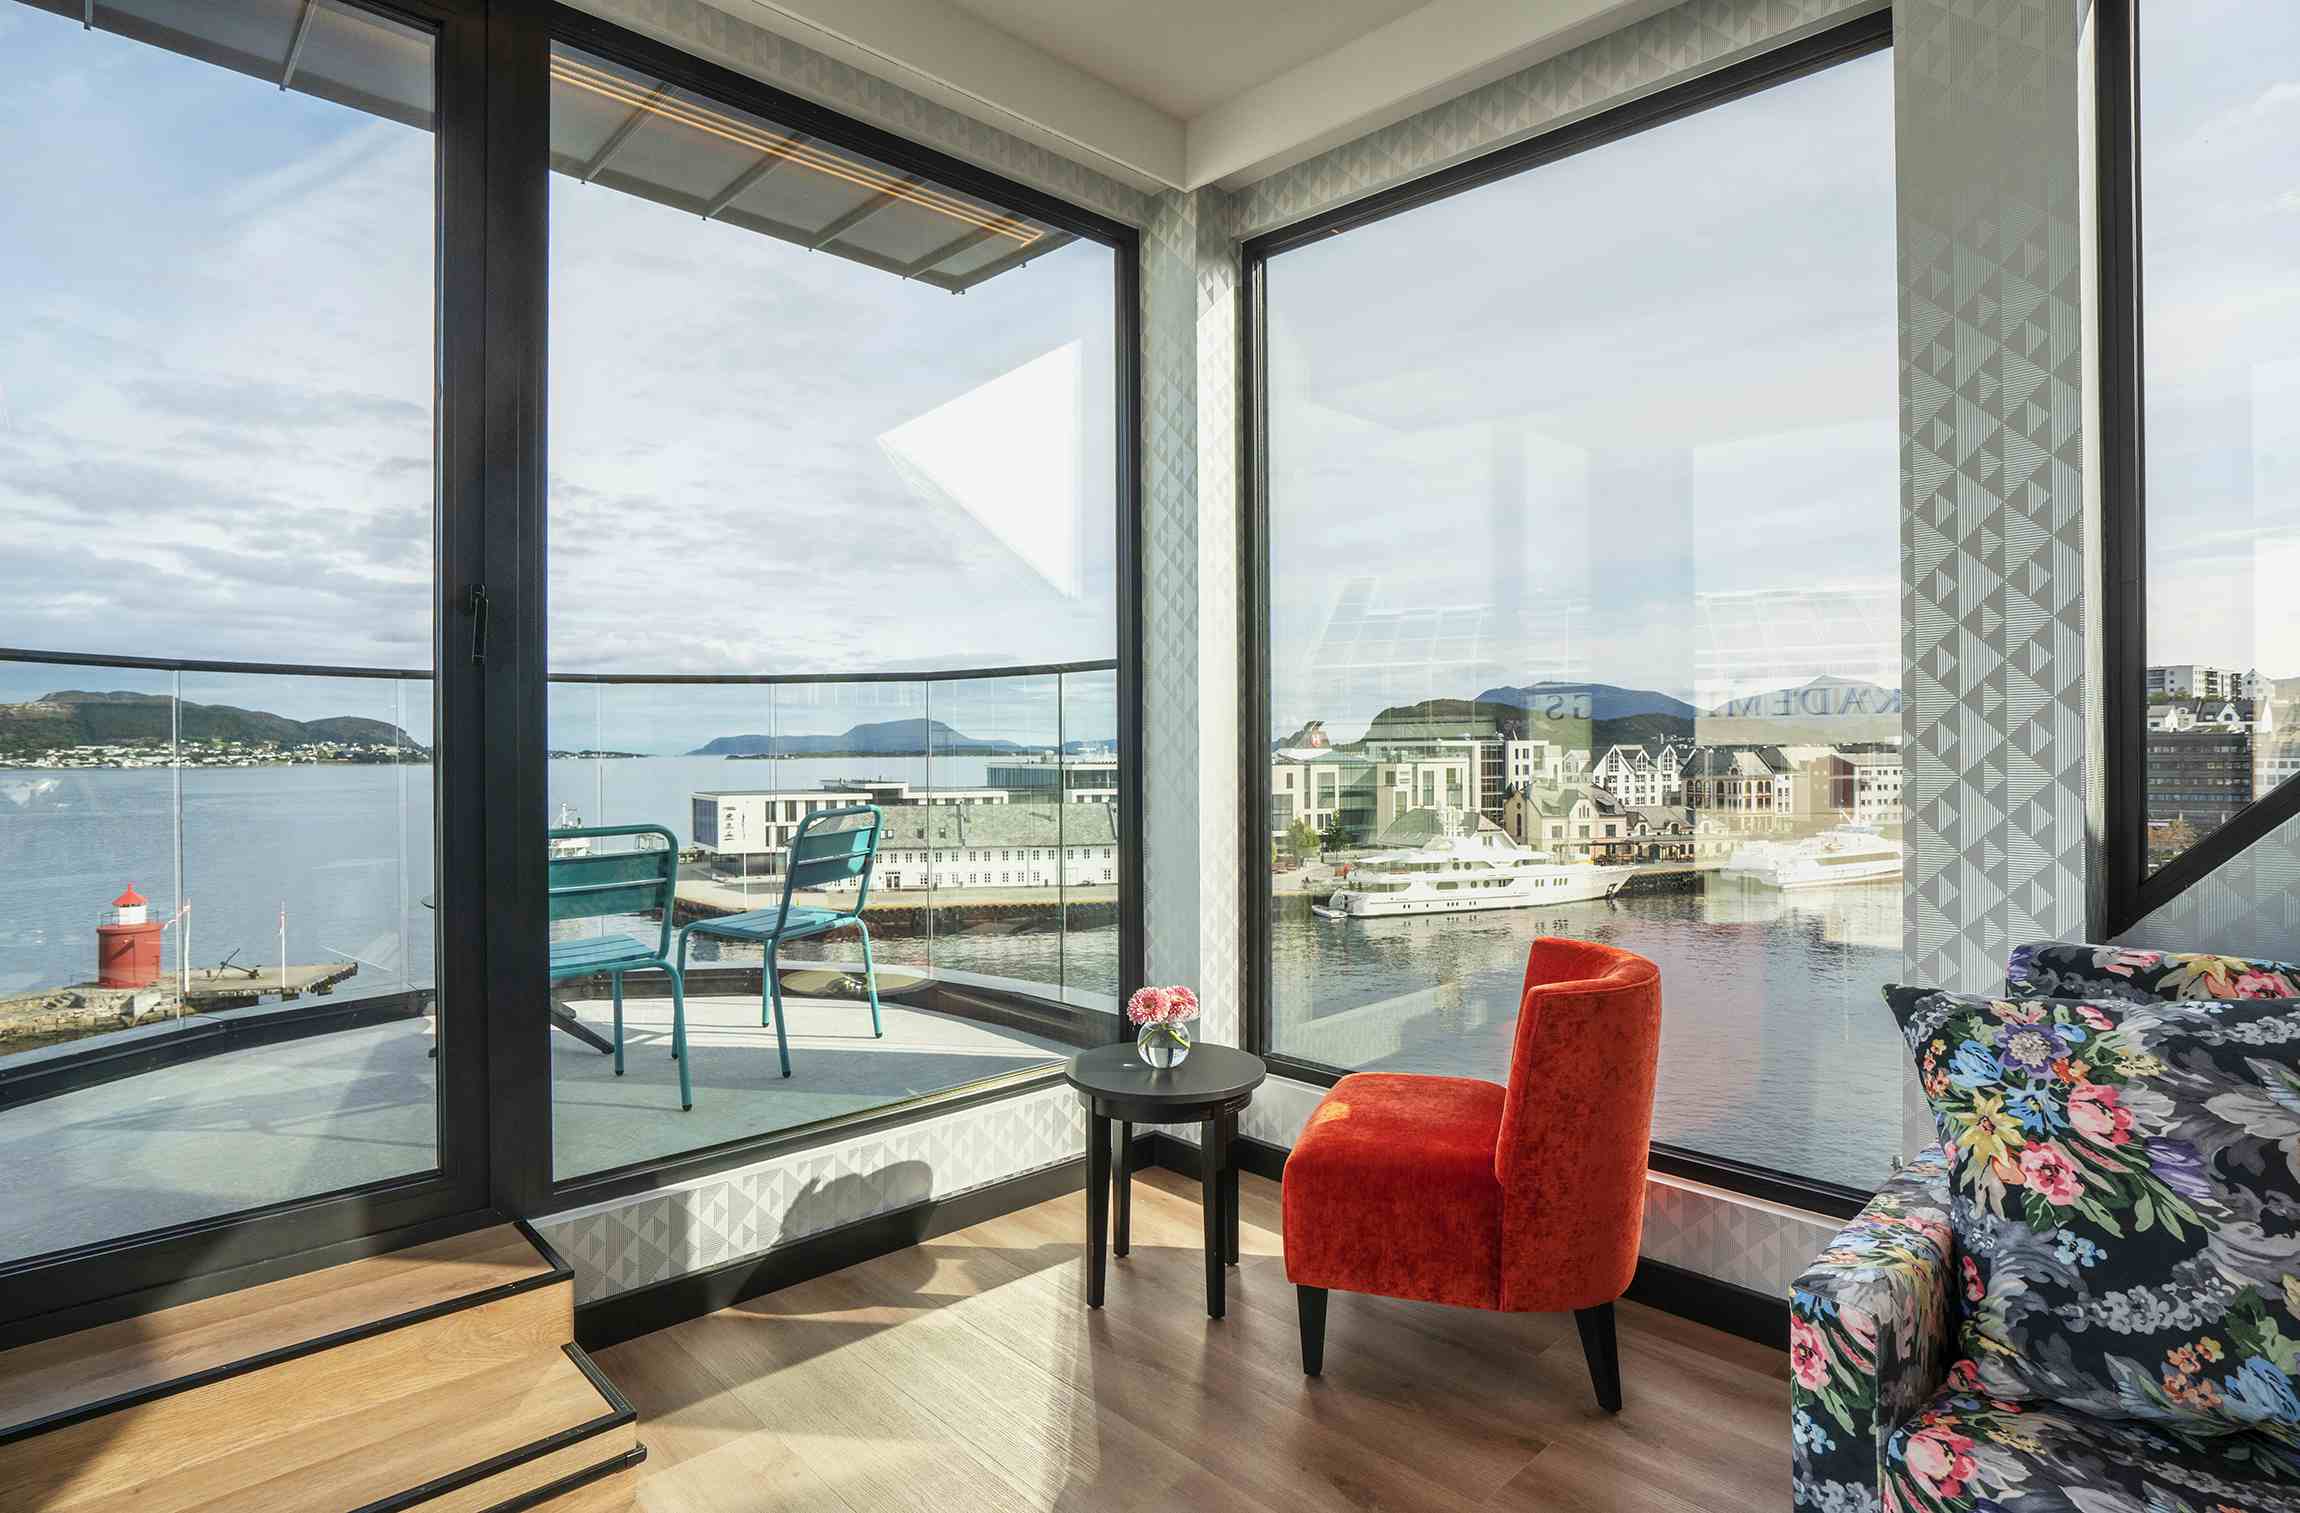 Oppgradert rom med store vindu og panoramautsikt over havna.